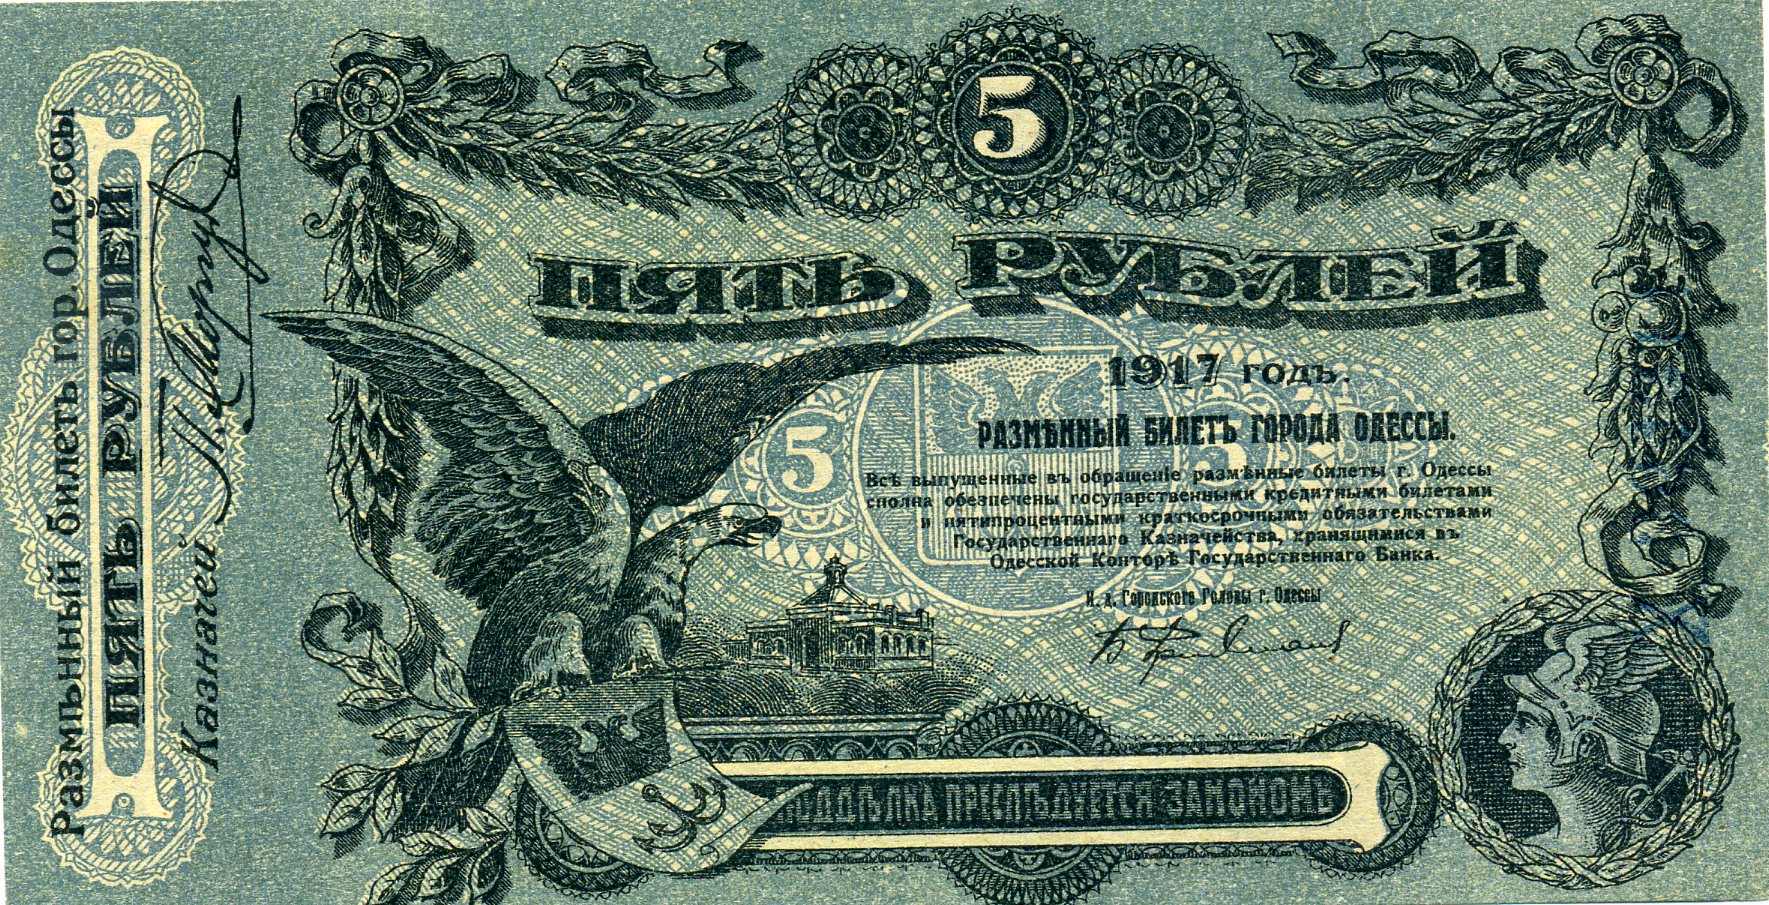 Разменный билет города Одессы 5 рублей 1917 года. Аверс. Реферат Рефератович.